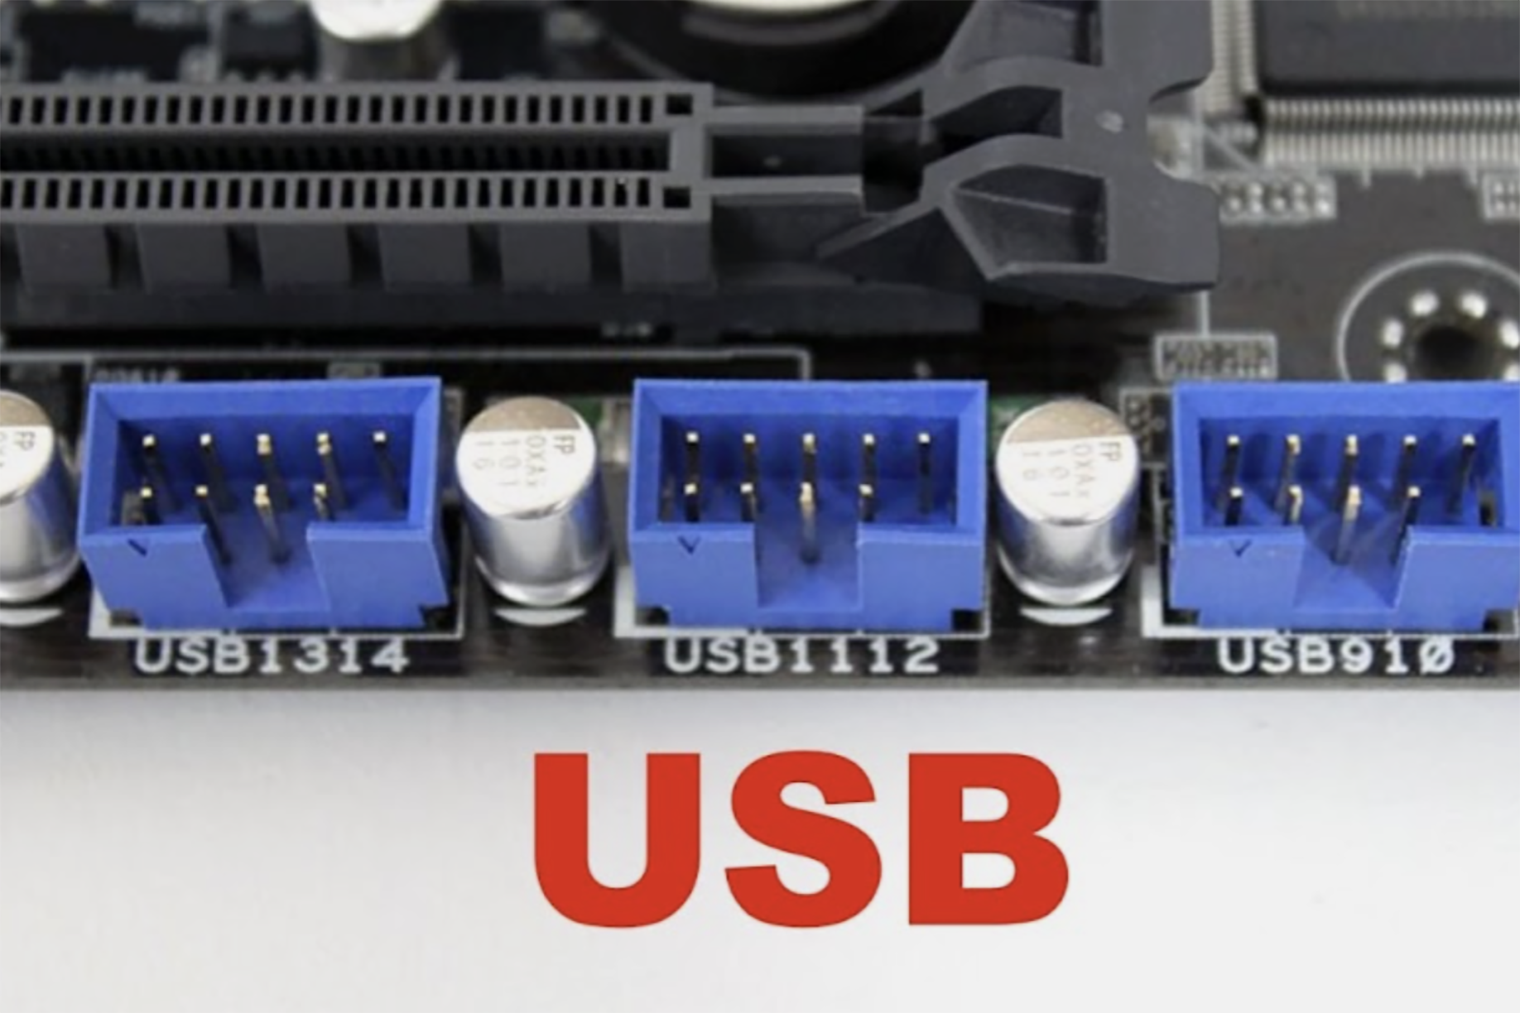 Контроллеры могут подключаться к разъему для подсветки или внутреннему USB на плате. Источник: quora.com